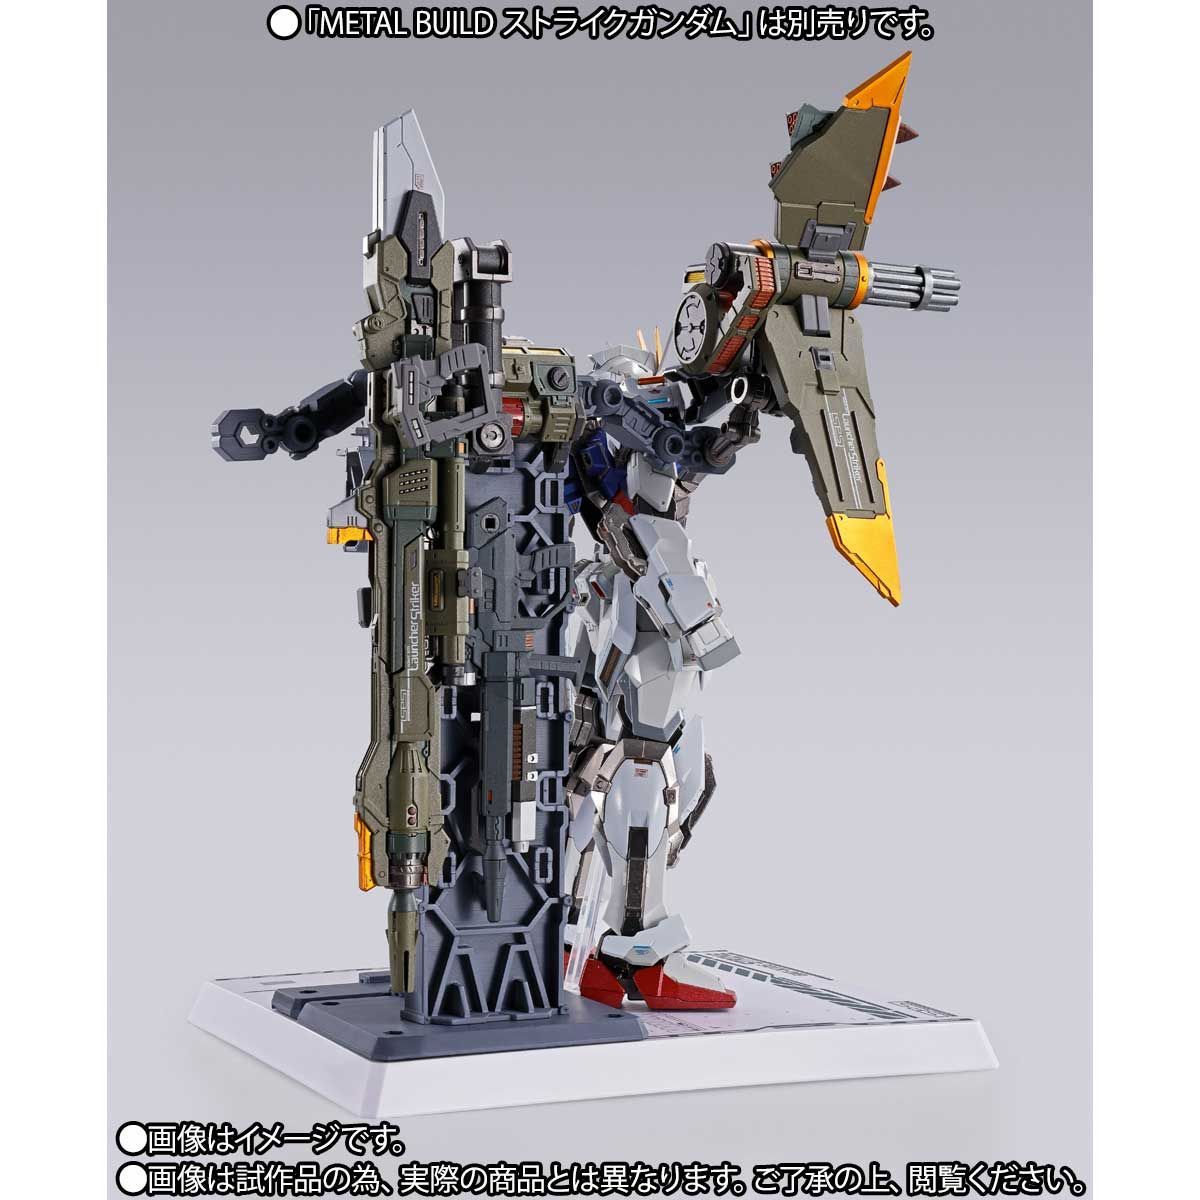 【限定販売】METAL BUILD『ランチャーストライカー』機動戦士ガンダムSEED 可動フィギュア-010